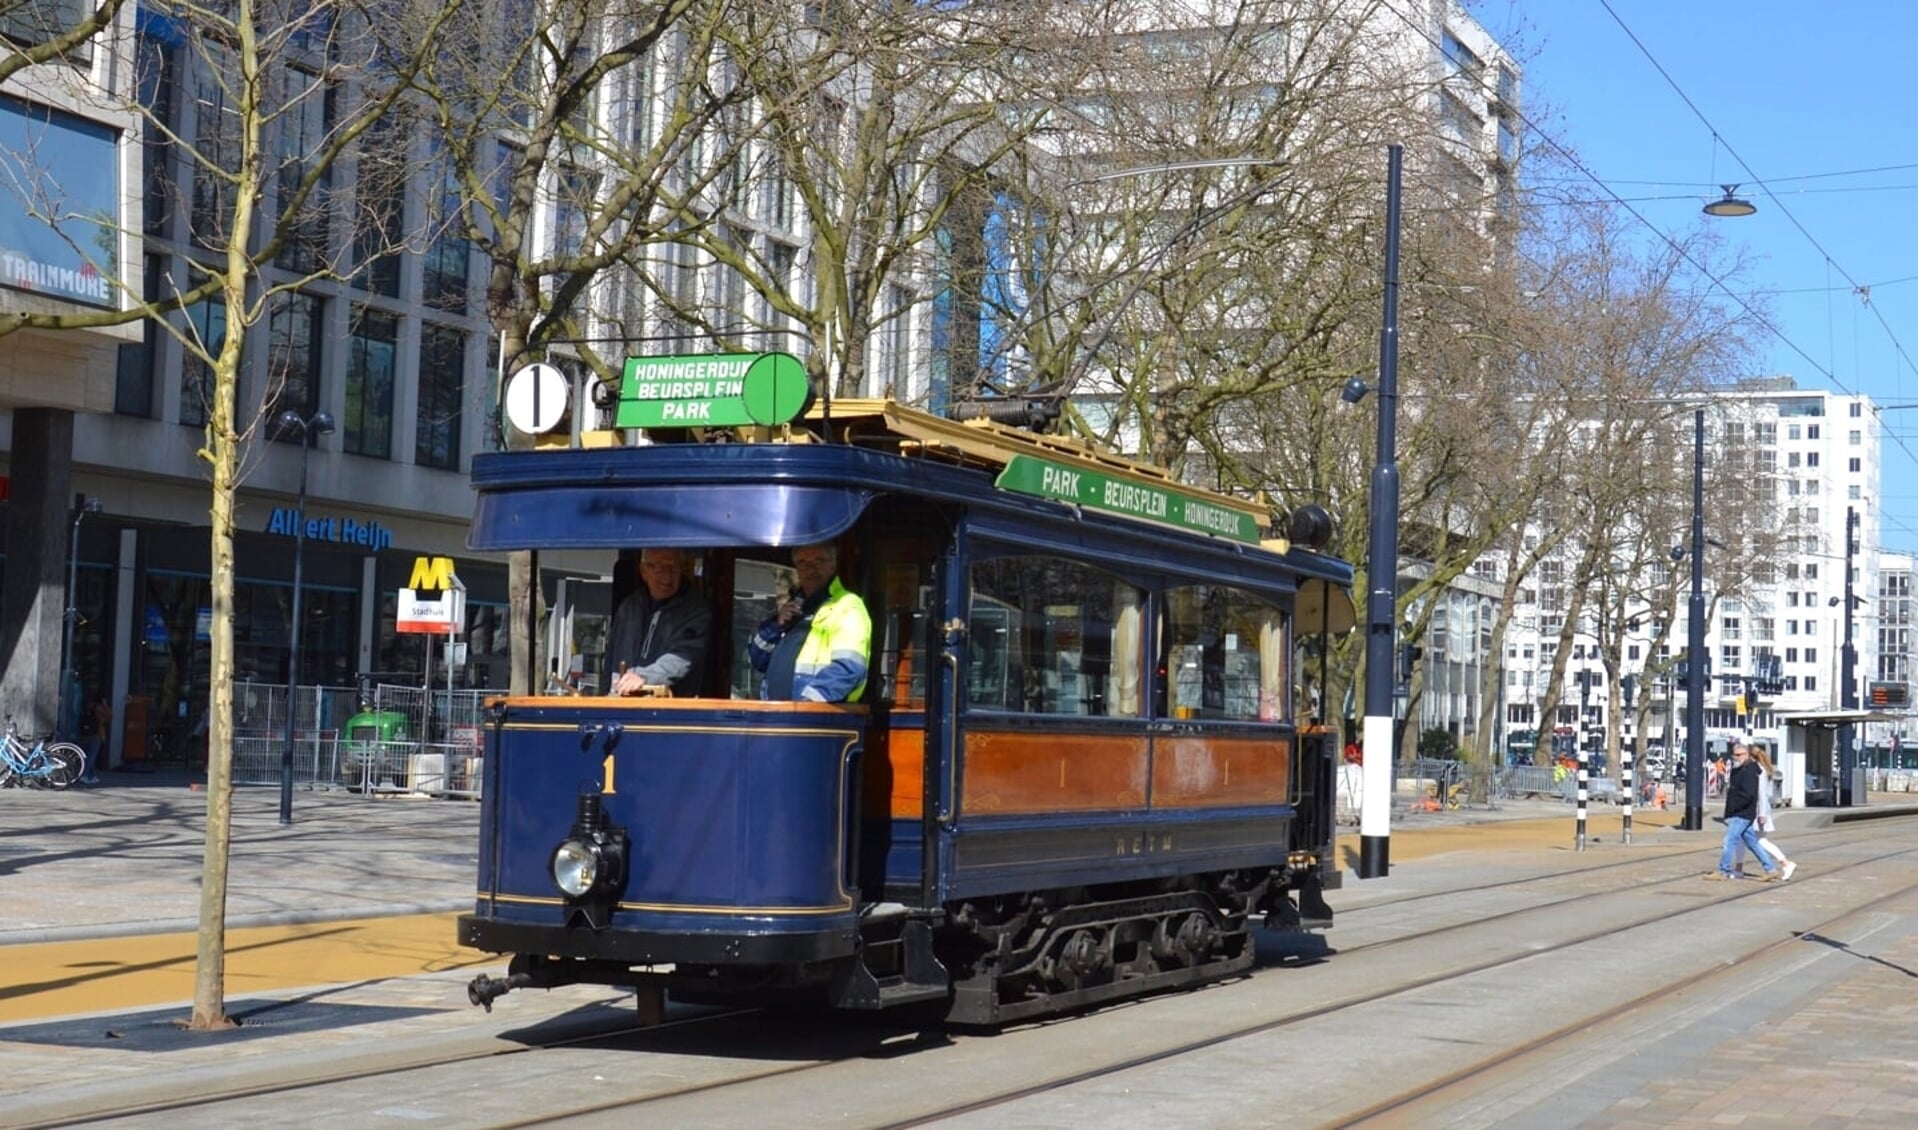 De eerste elektrische tram van Rotterdam uit 1905 op de Coolsingel. Foto: Stichting RoMeO